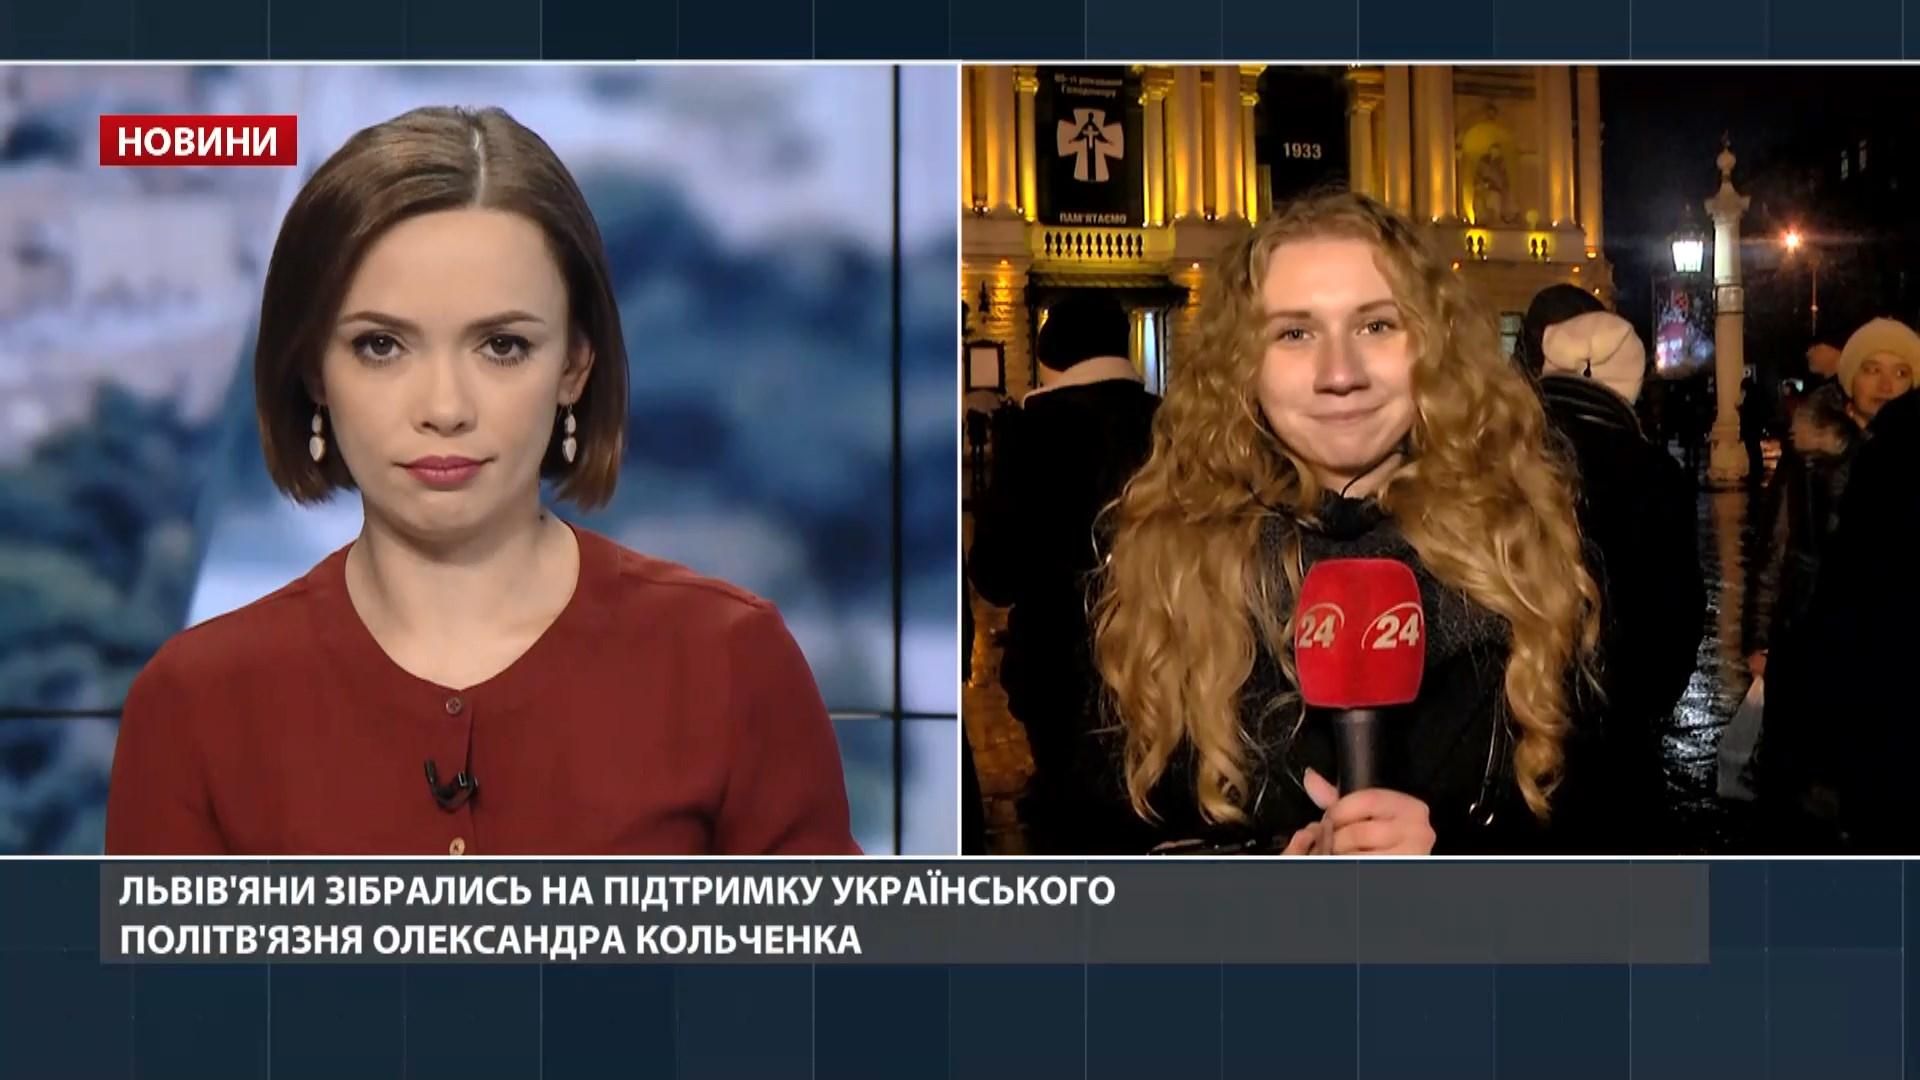 Во Львове состоялась акция в поддержку украинского политзаключенного